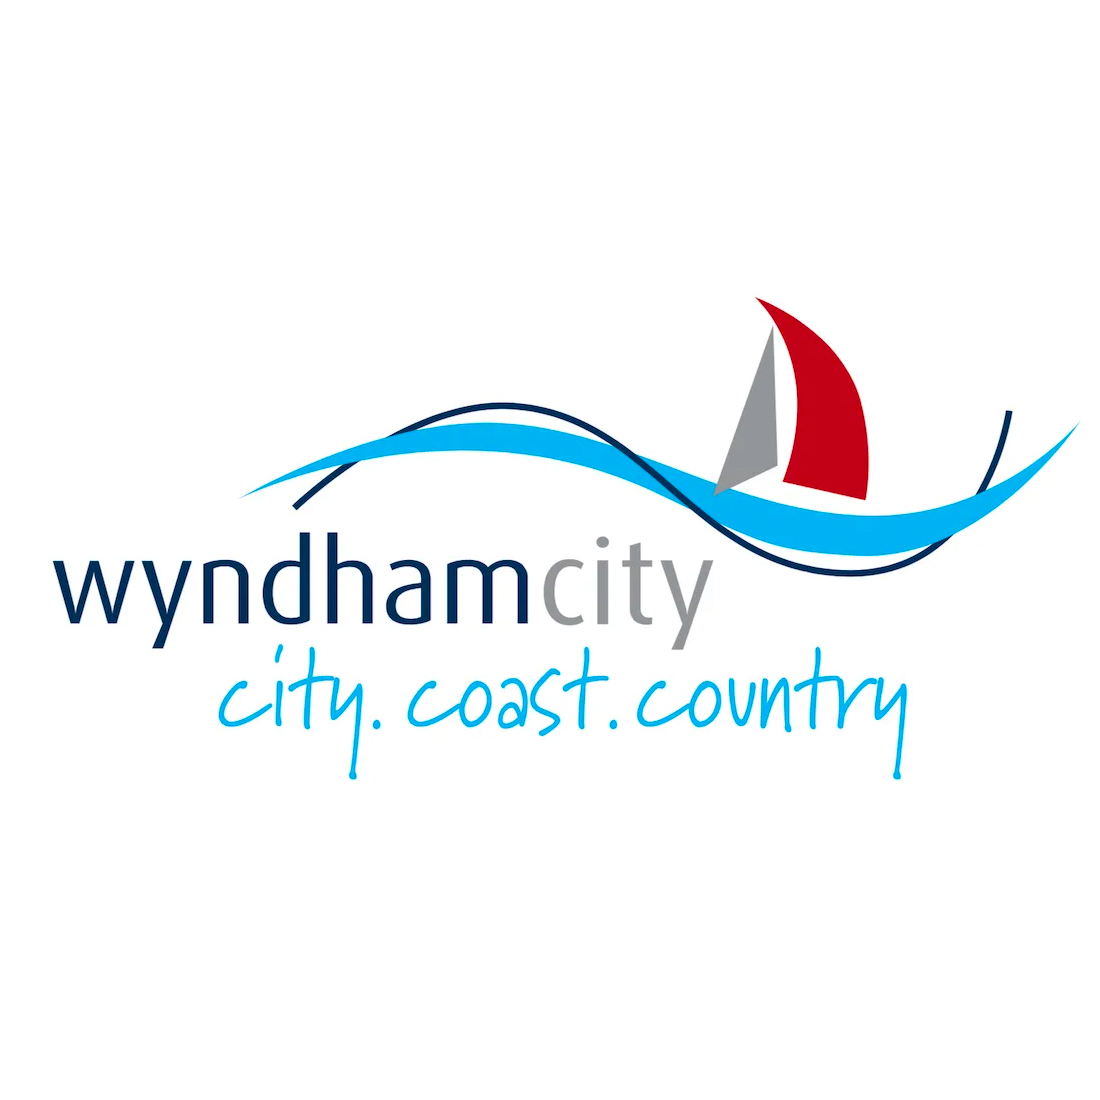 WYNDHAM CITY COUNCIL